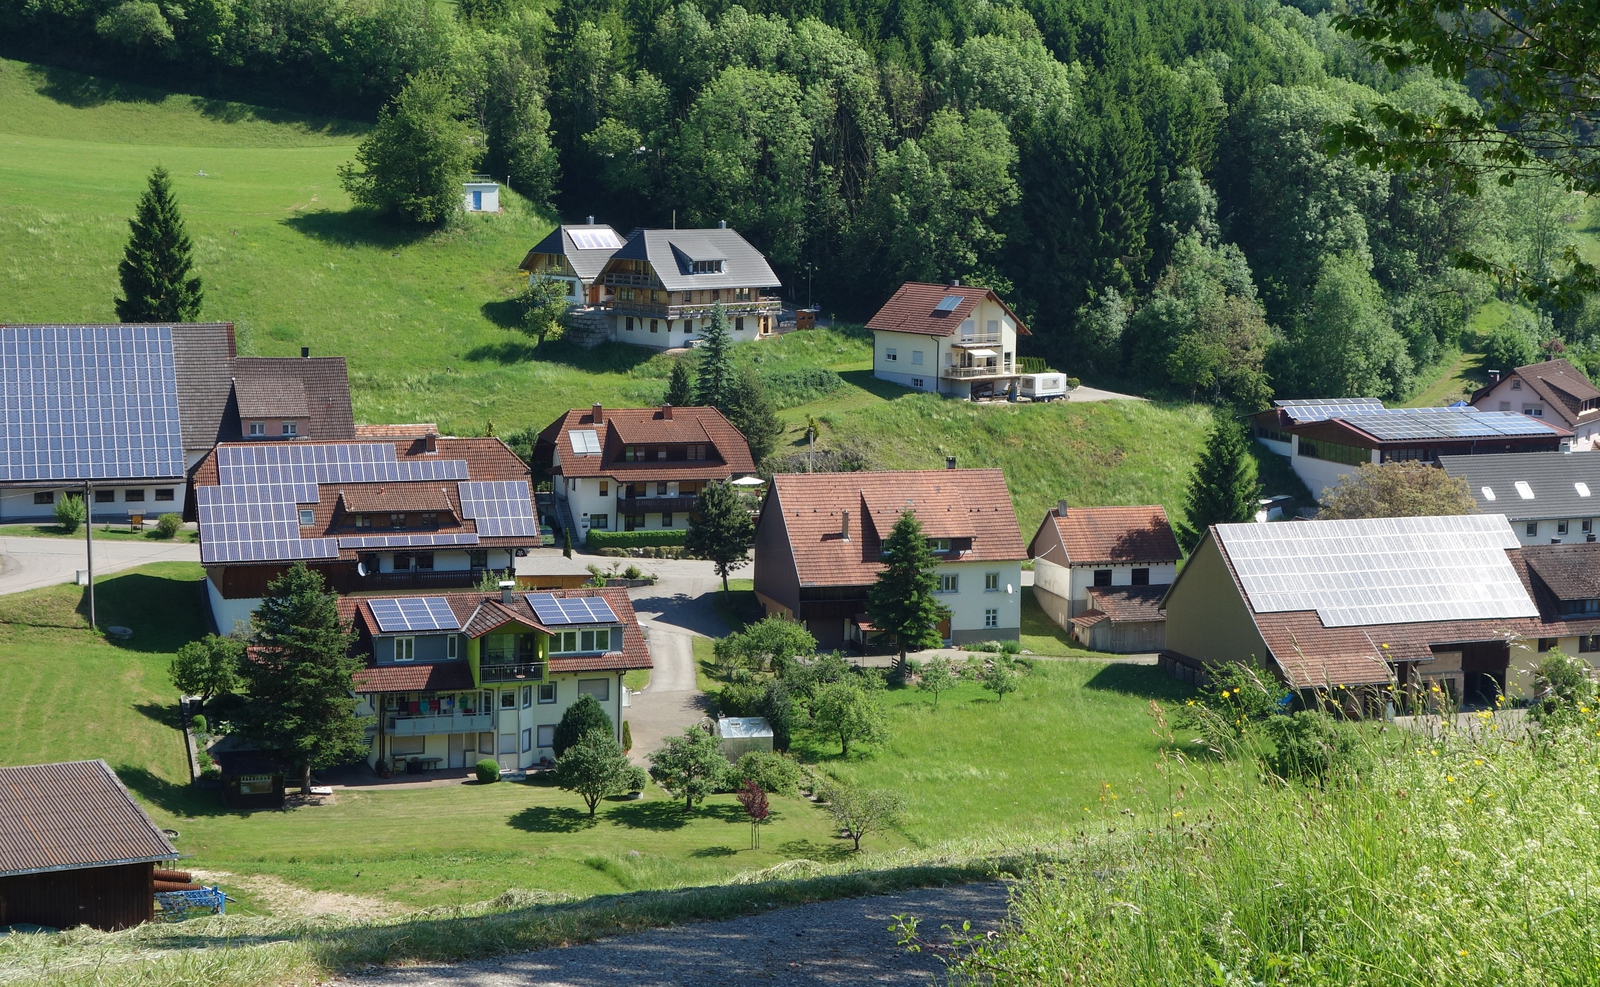 Häuser mit und ohne Photovoltaik-Anlage auf dem Dach an einem sonnenbeschienenen Schwarzwaldhang.